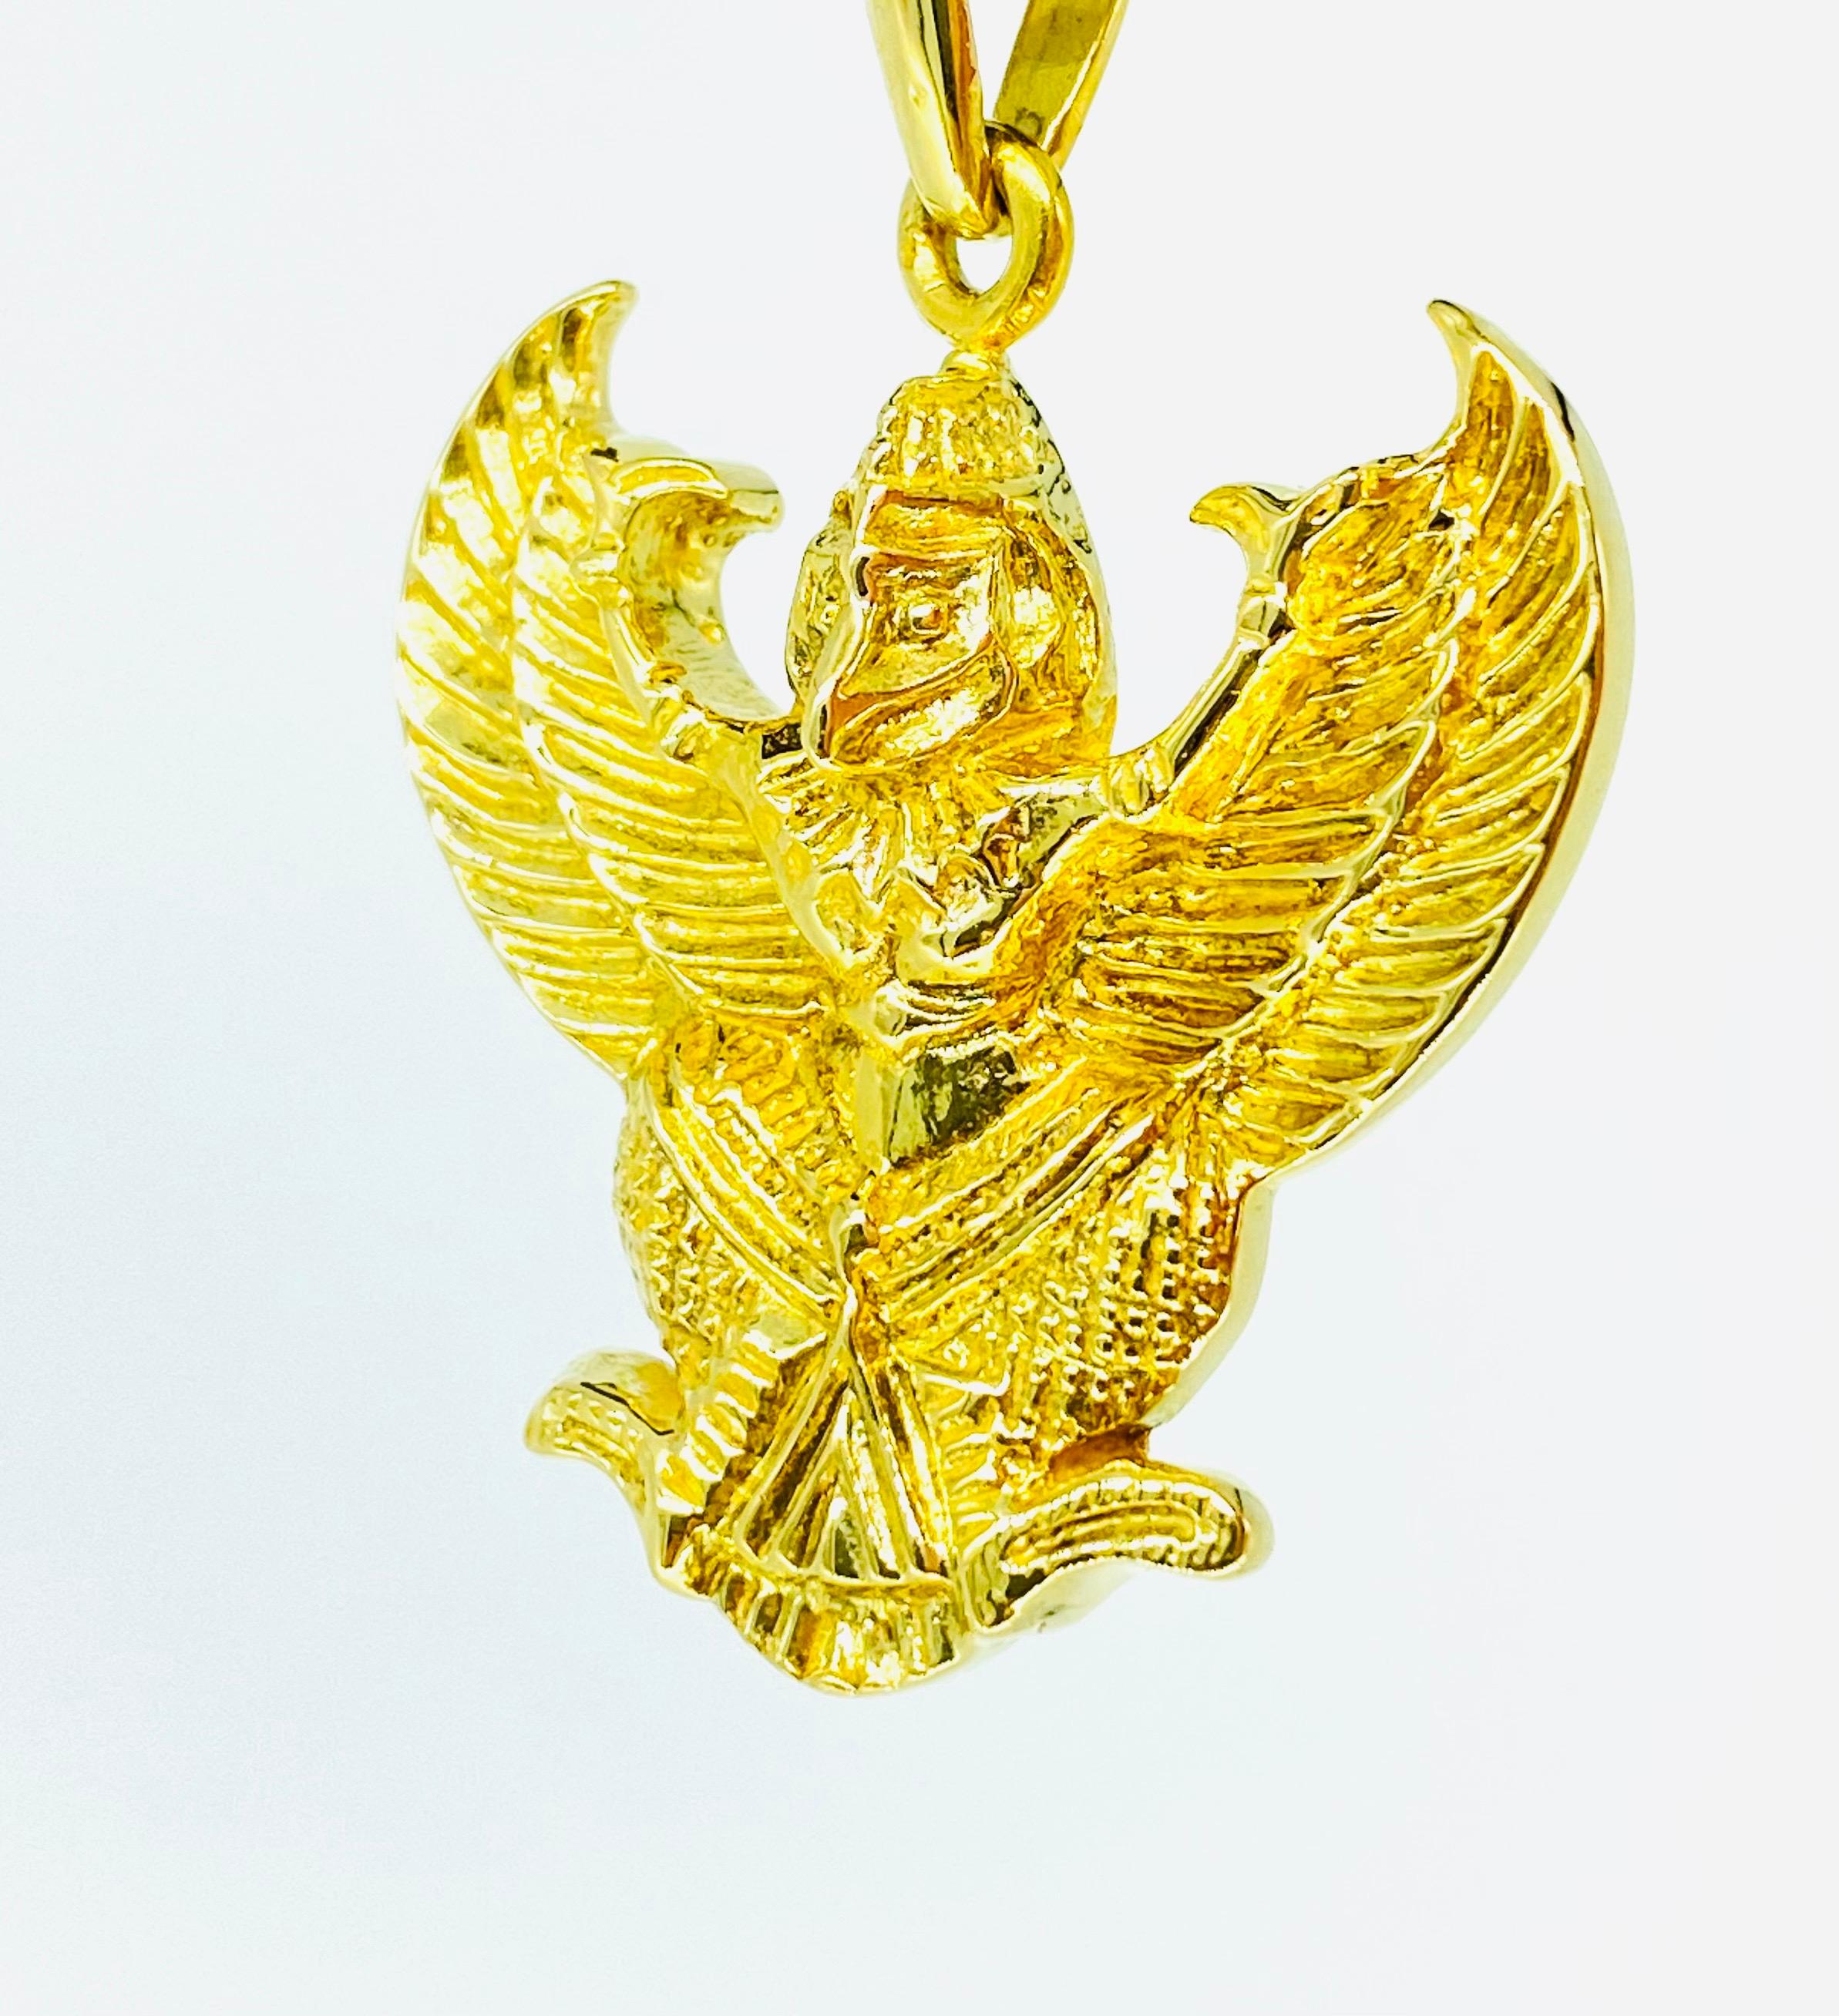 Pendentif aigle égyptien Horus lourd en or massif 18 carats. Un travail artisanal très détaillé sur ce pendentif très unique. Le pendentif mesure 31,5 mm X 35 mm (sans la boucle) et pèse 22,4 grammes d'or massif 18k. Travail détaillé très rare du